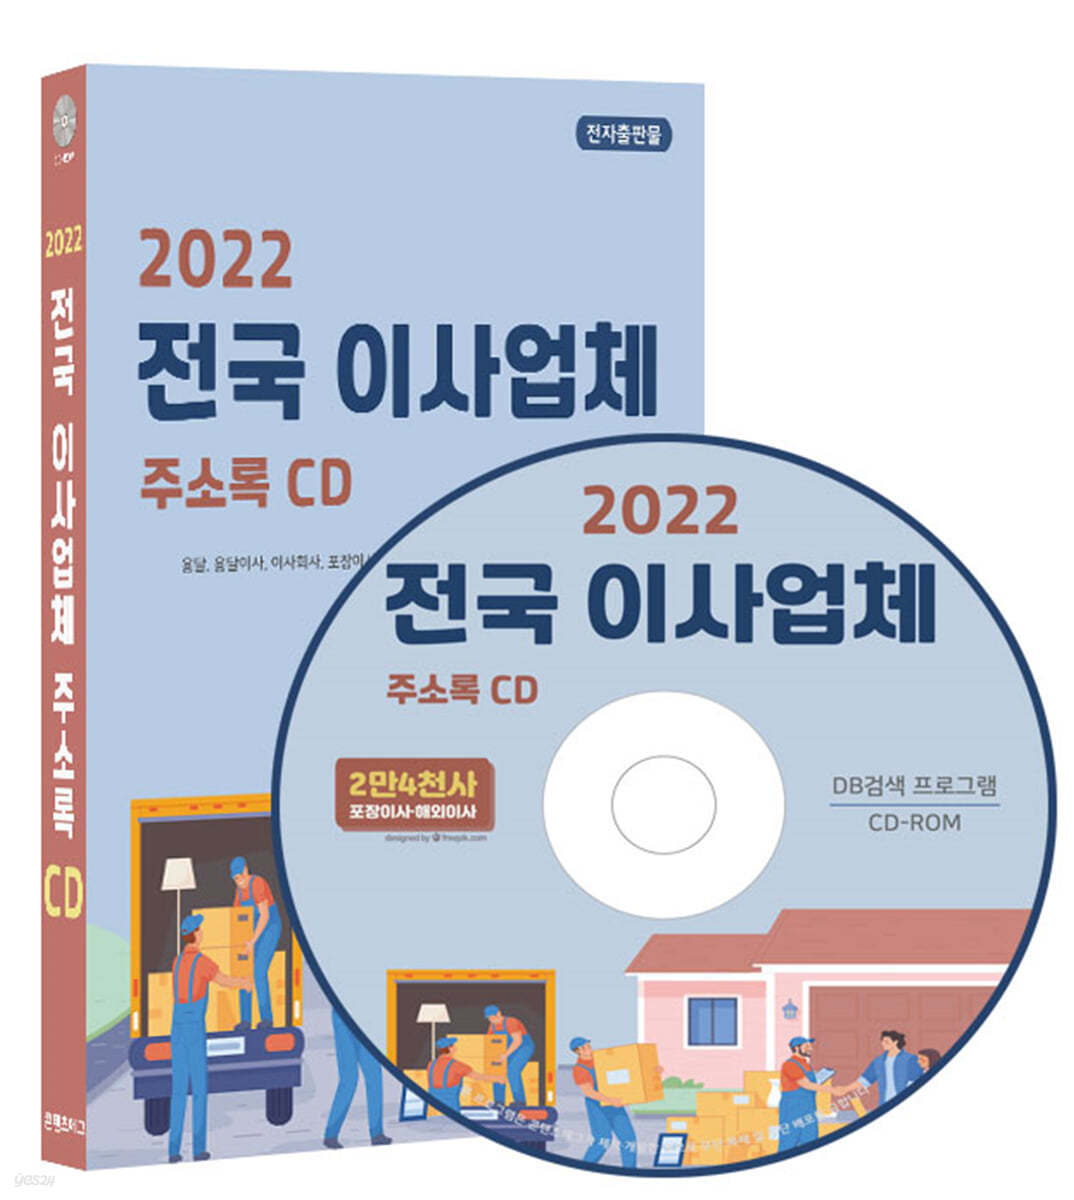 2022 전국 이사업체 주소록 CD 